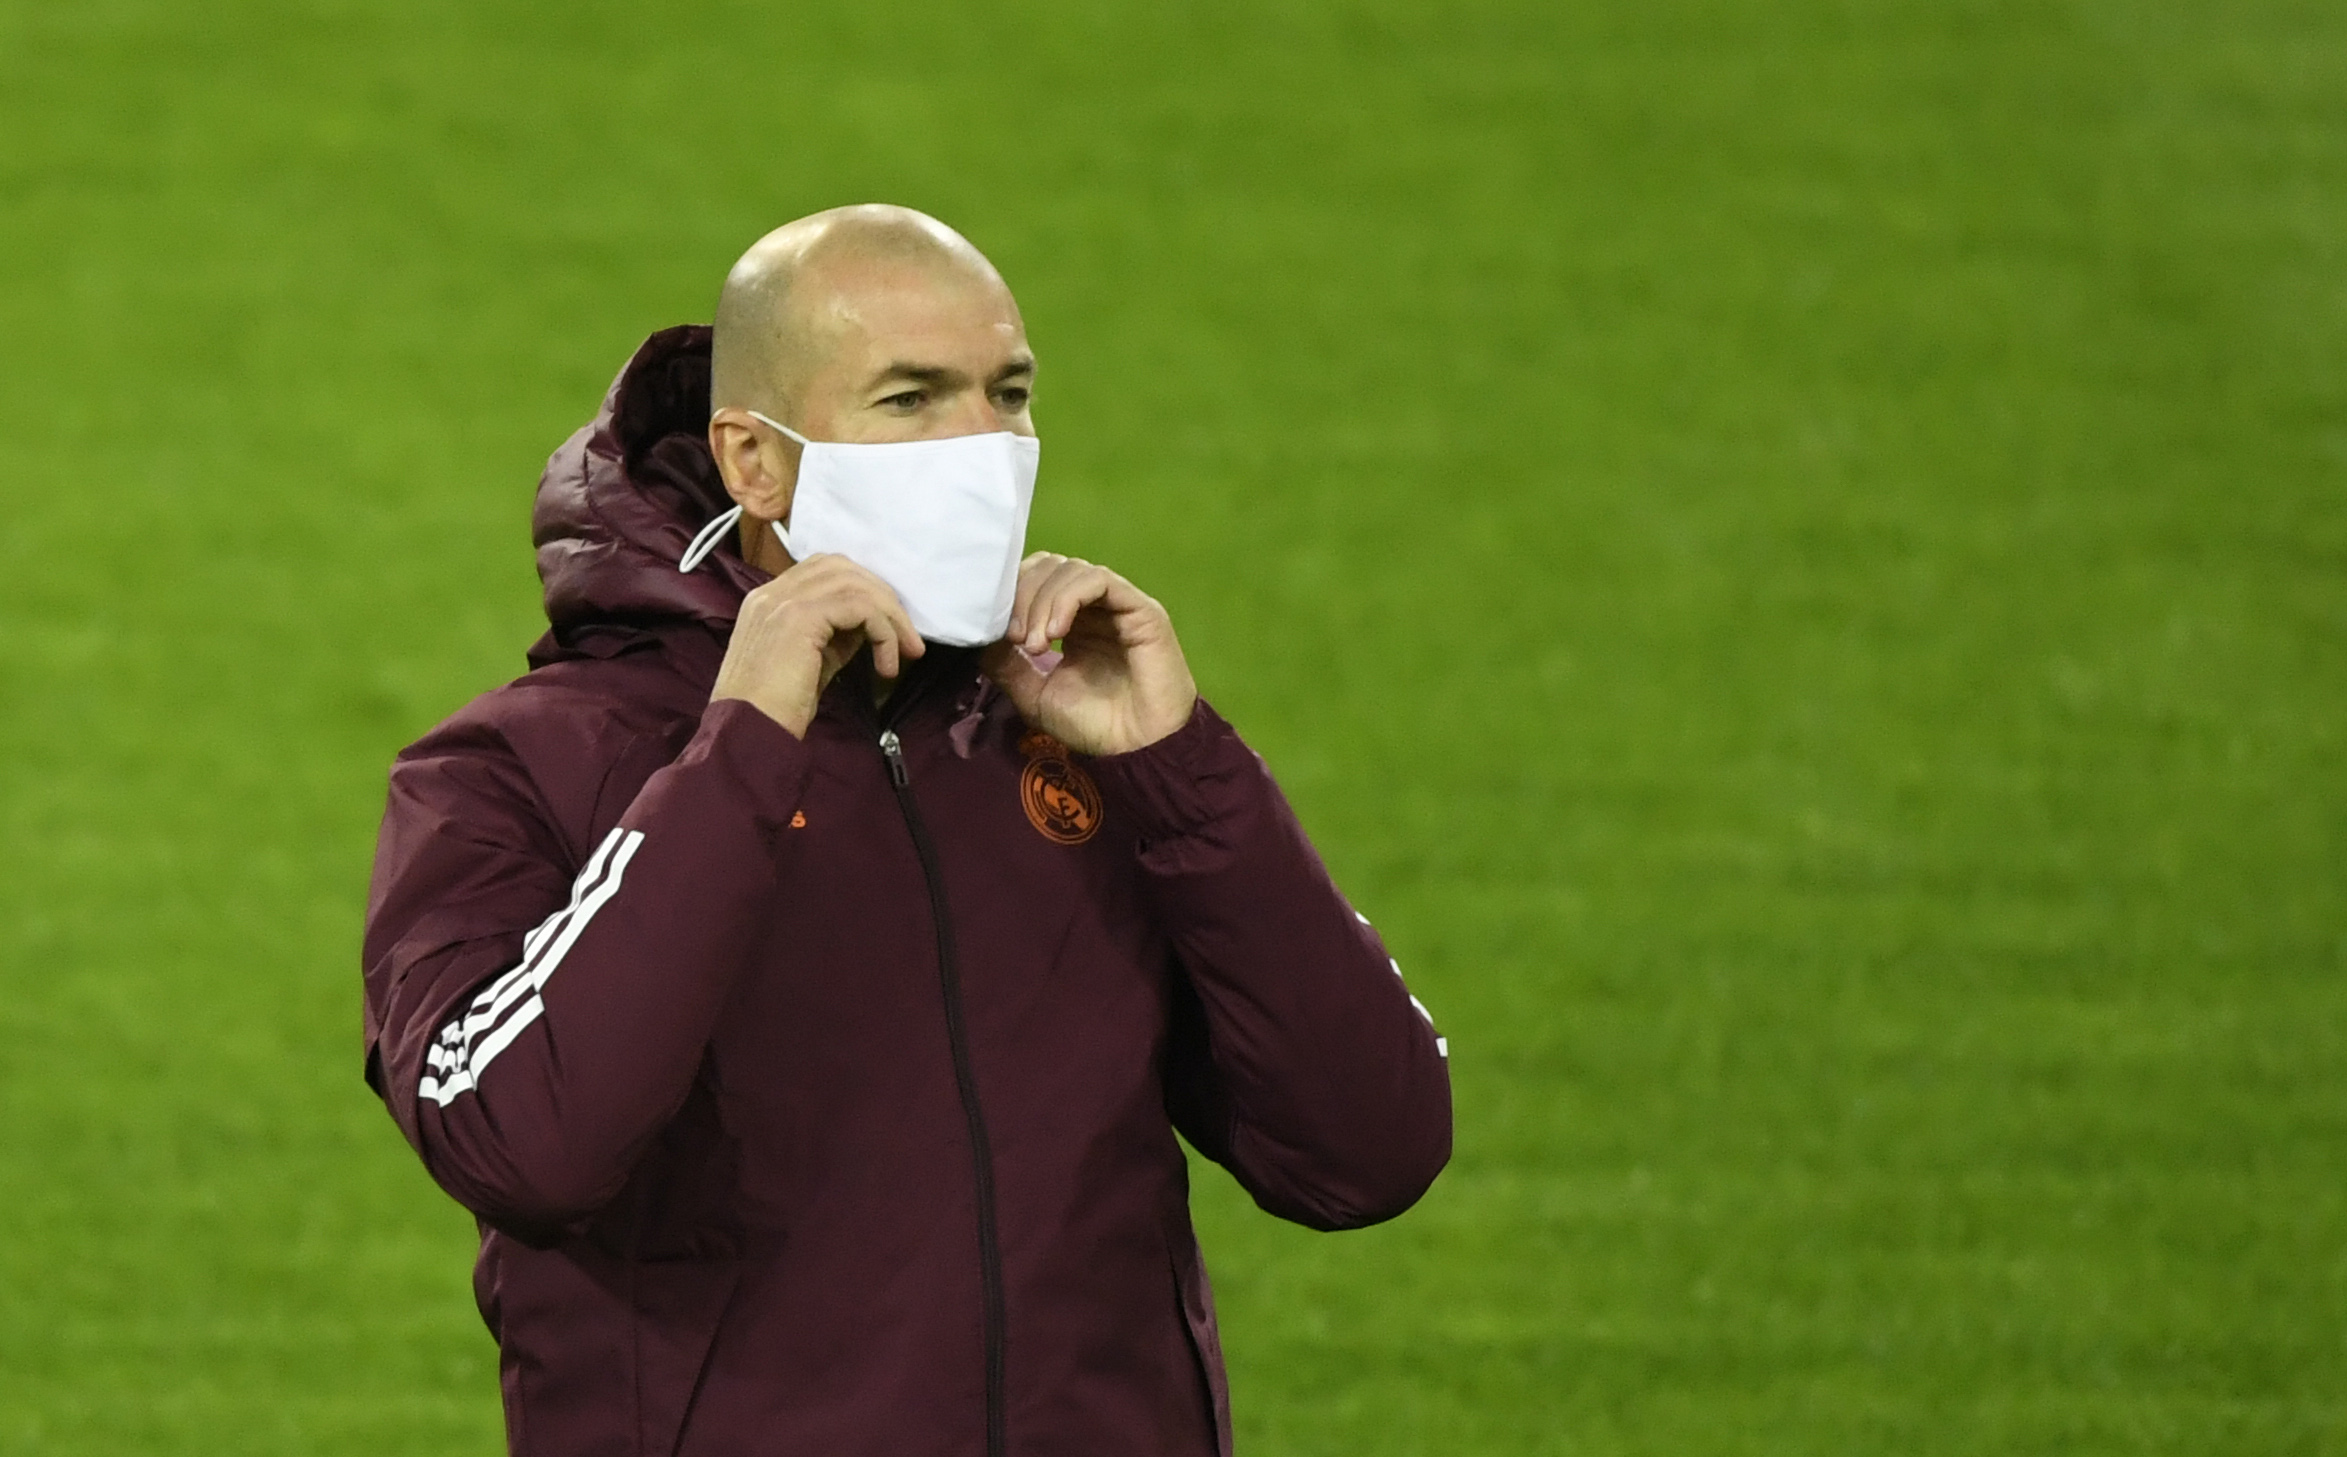 El técnico del Real Madrid, Zinedine Zidane, ha sido diagnosticado con coronavirus. (Foto Prensa Libre: AFP)